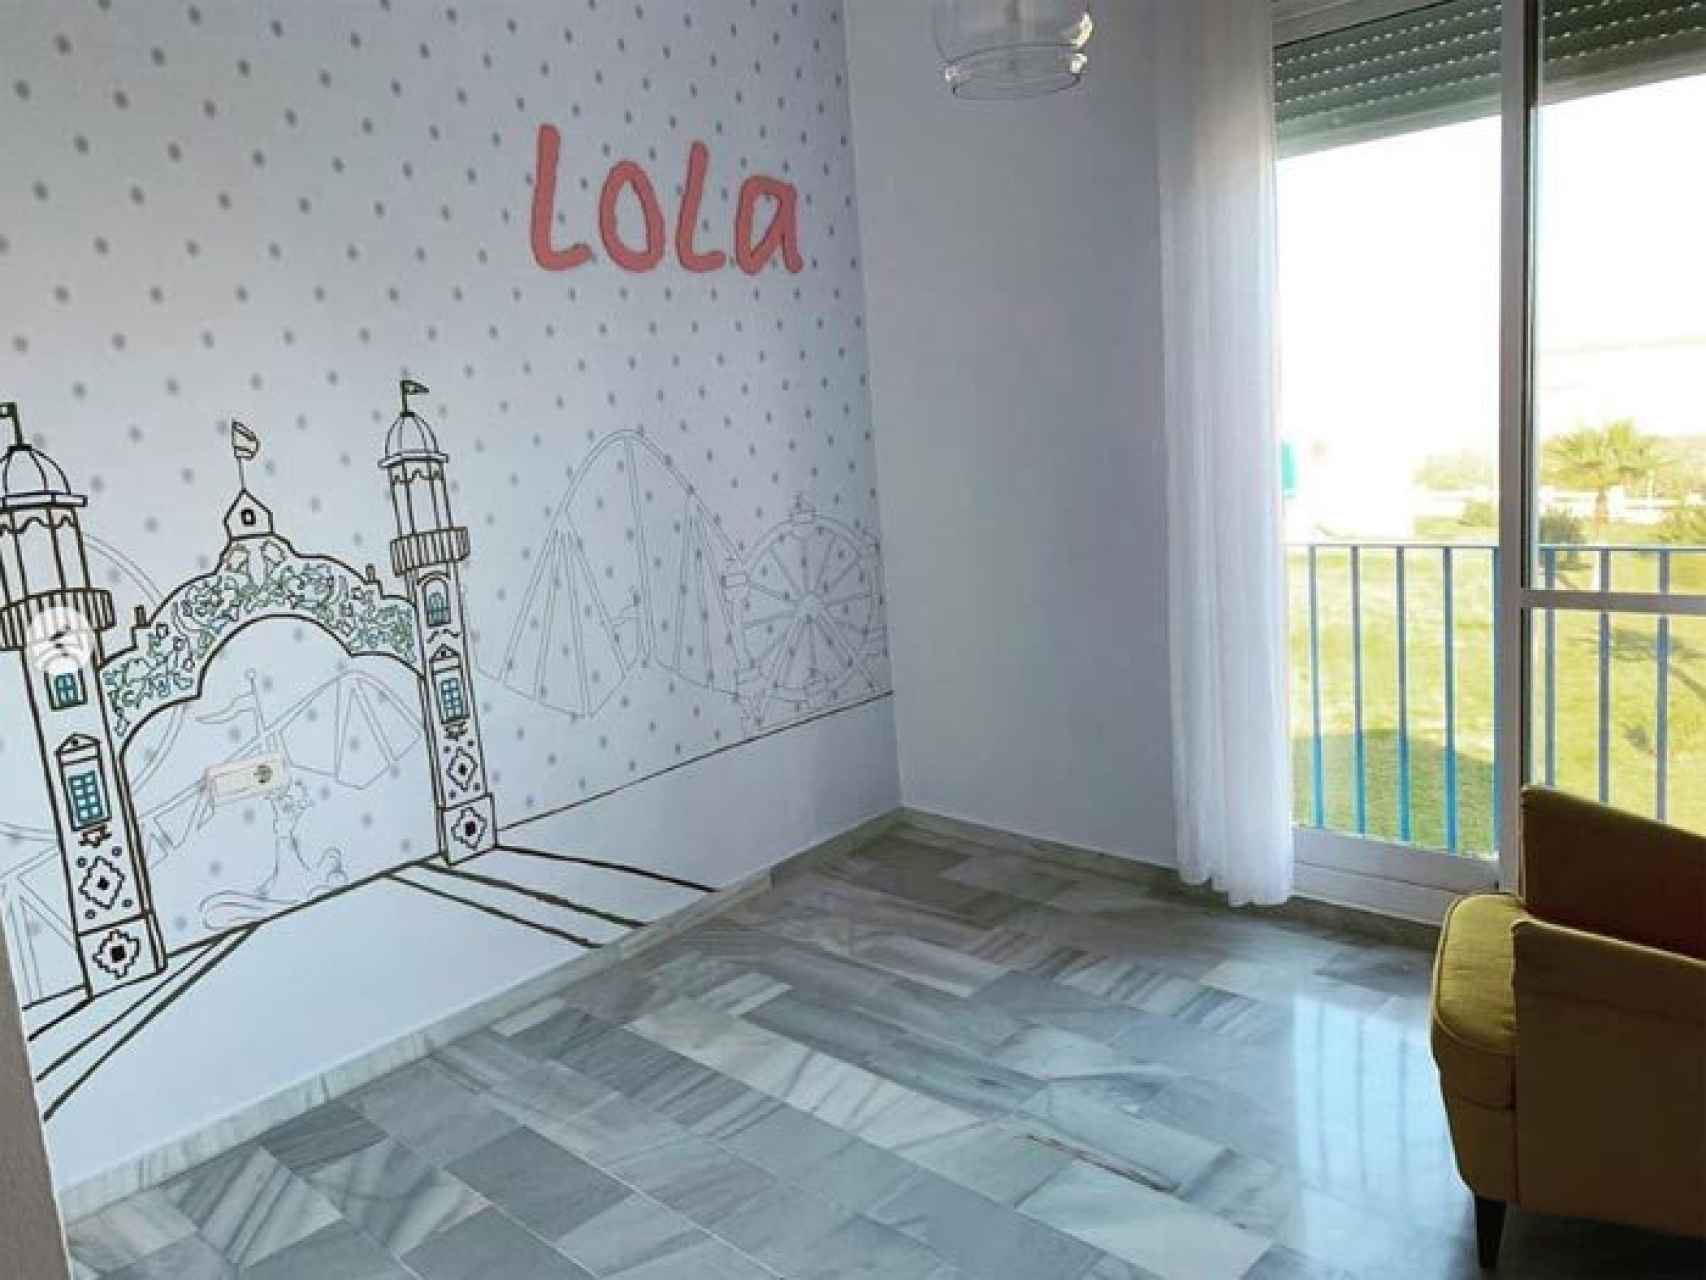 Decoración del cuarto de Lola, la hija de Toñi Moreno.